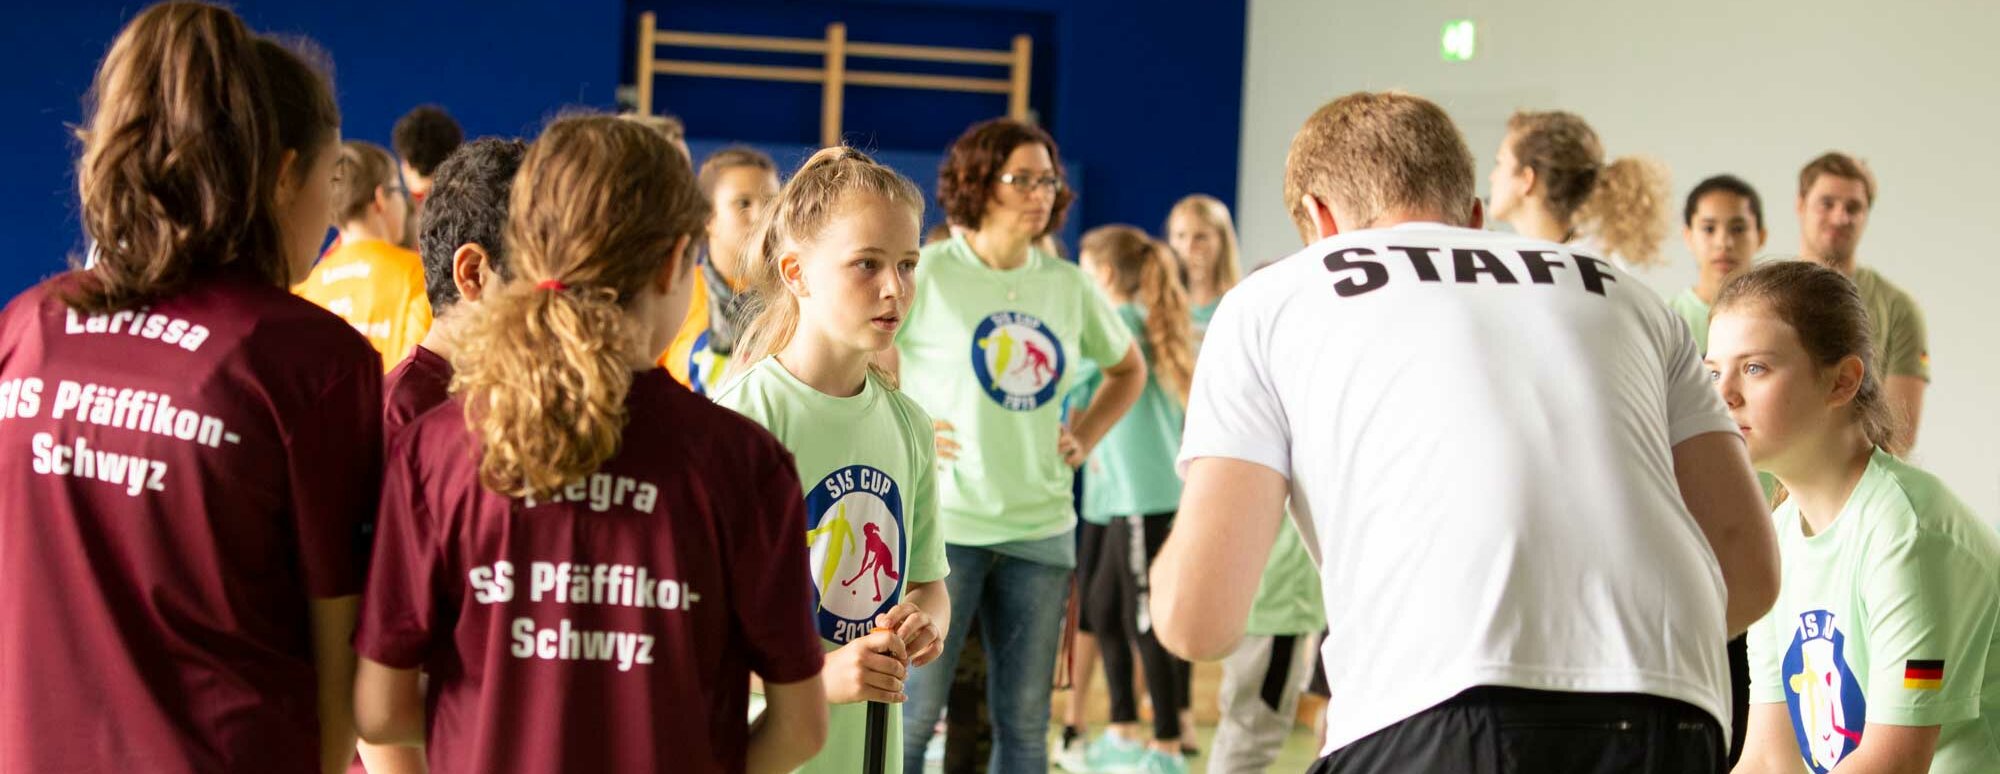 Eine Szene in einer Turnhalle. Ein Sportlehrer mit einem weissen T-Shirt, das "Staff" zeigt, steht vor einer Gruppe Schülerinnen und Schüler.